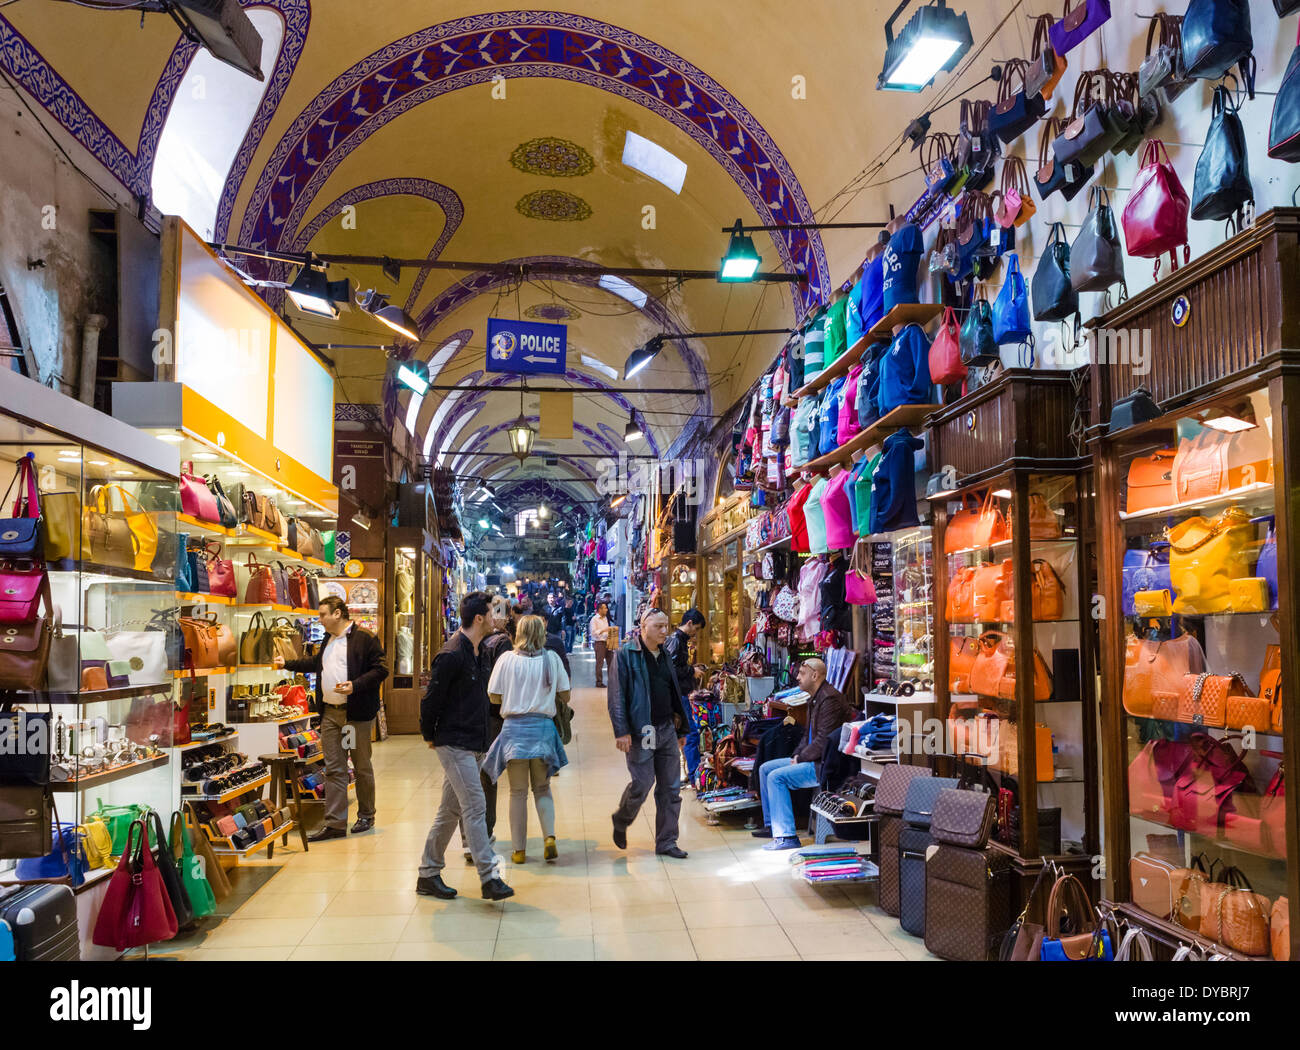 Il Grand Bazaar (Kapaliçarsi), Istanbul, Turchia Foto Stock